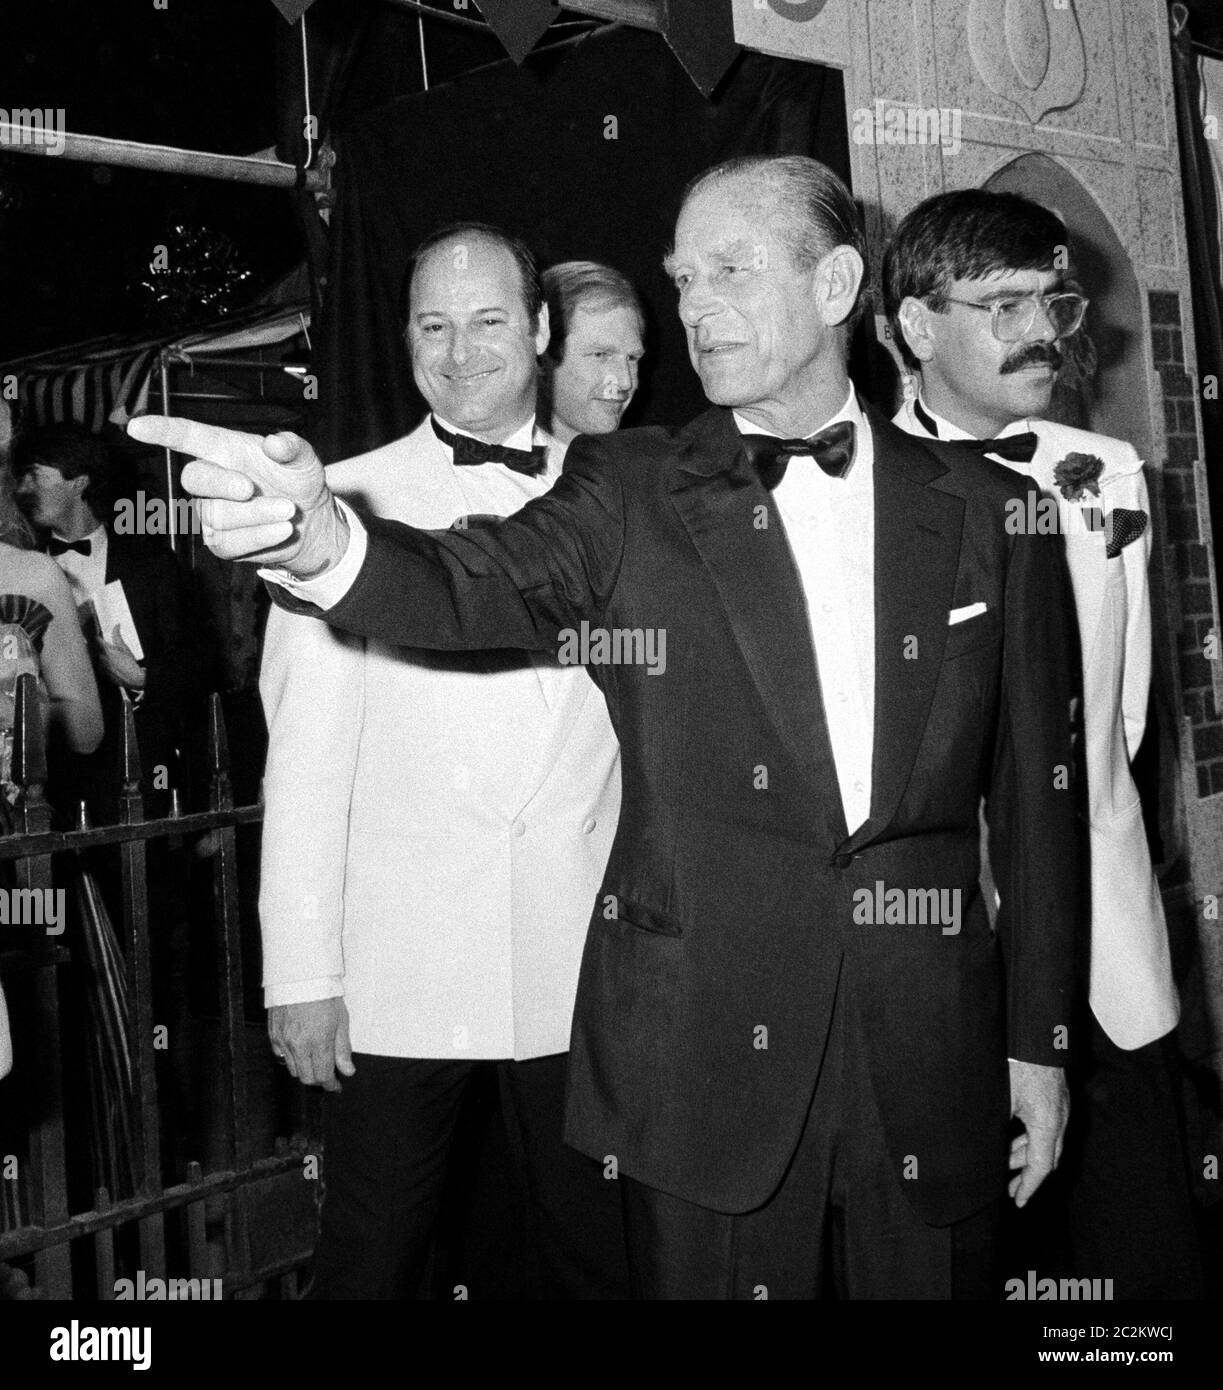 LONDRA, REGNO UNITO. Luglio 1985: S.A.R. il Principe Filippo Duca di Edimburgo al Berkely Square Ball di Londra. © Paul Smith/aggiornamento delle caratteristiche Foto Stock